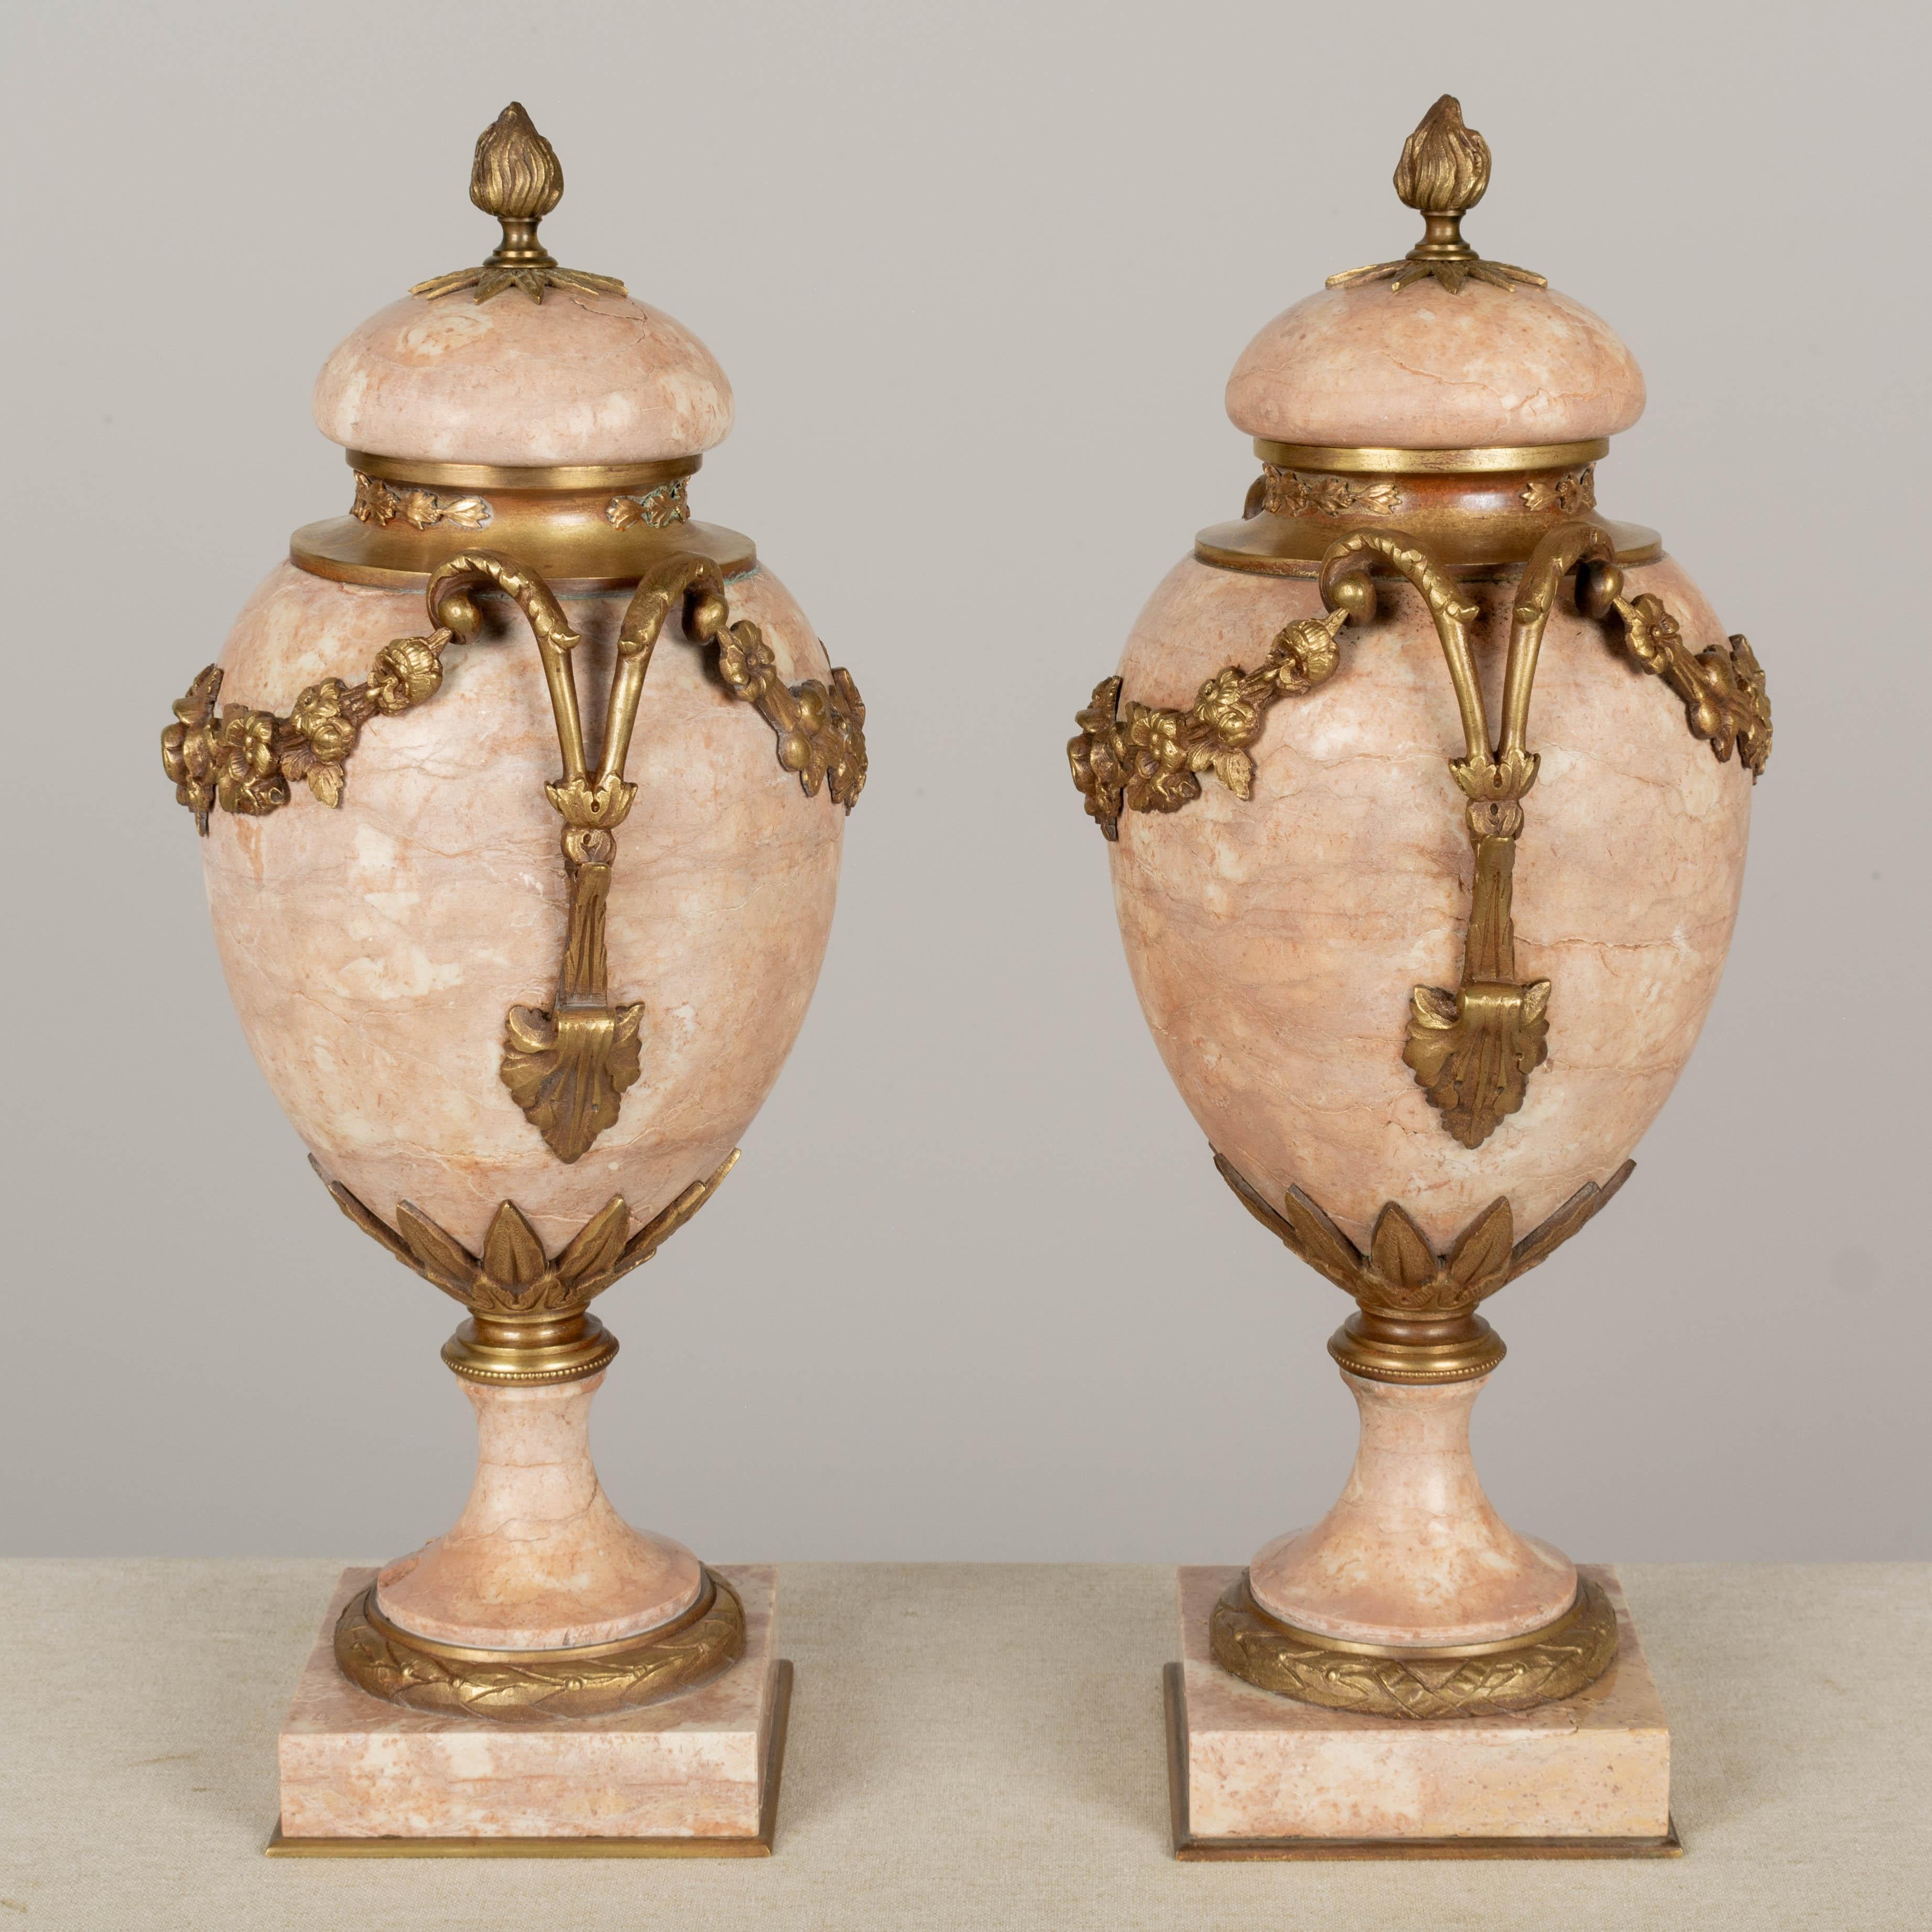 Paire de cassolettes françaises du XIXe siècle en bronze montées en forme d'urne, avec un beau marbre de couleur rose et des guirlandes florales moulées joliment détaillées. Couvercles amovibles avec embouts de flamme. Petit éclat à la base d'un